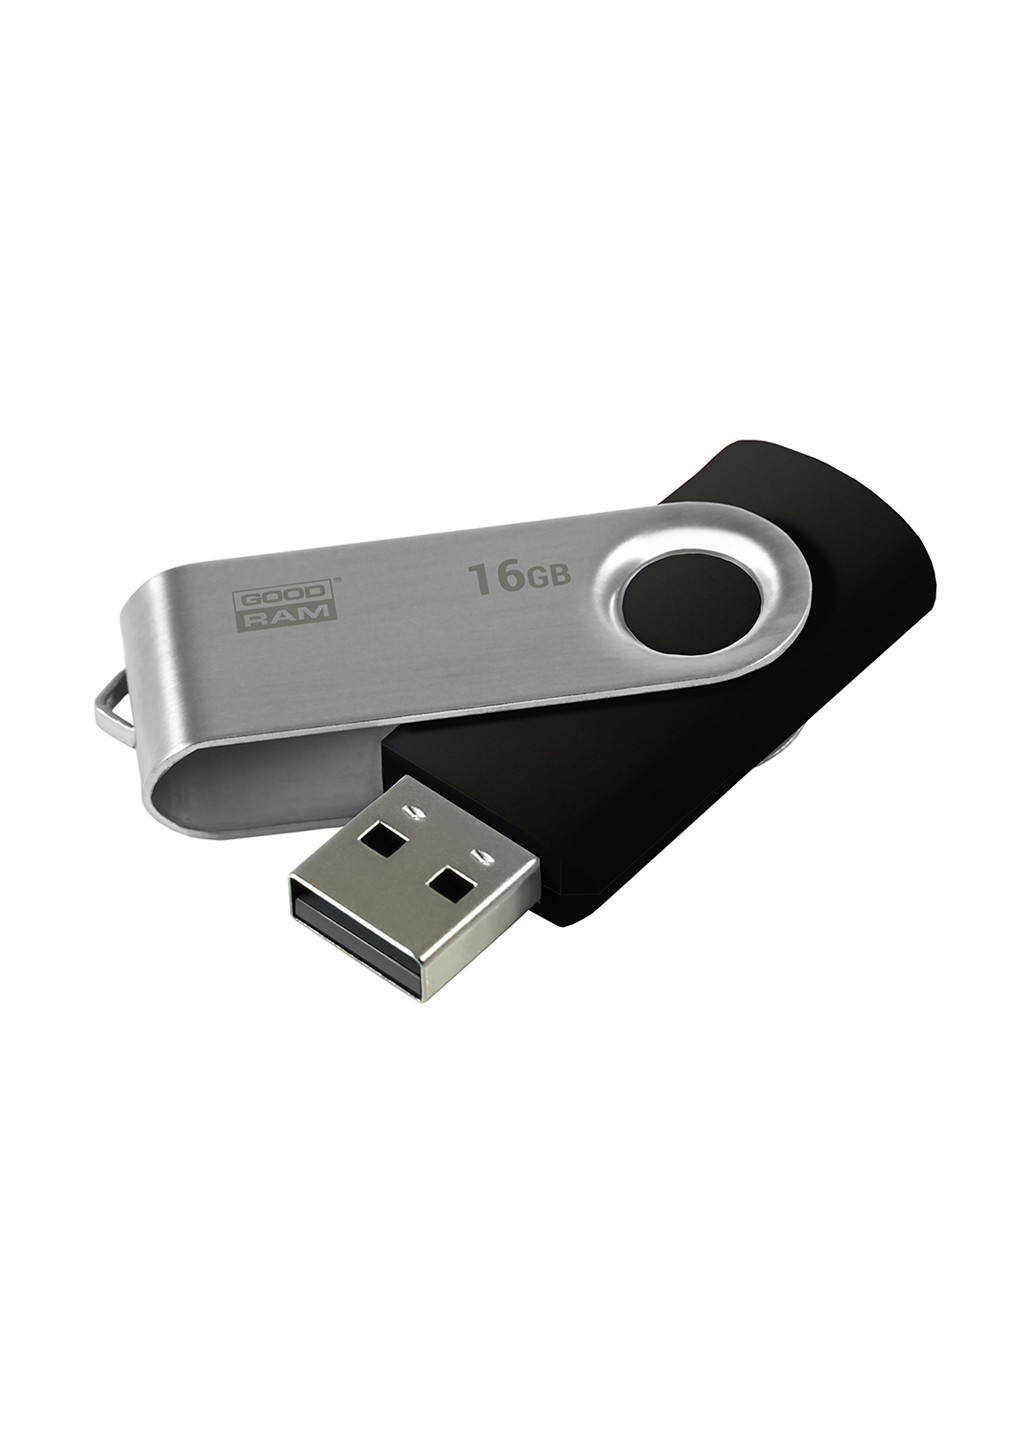 Флеш пам'ять USB 16GB UTS2 USB 2.0 Twister Black (UTS2-0160K0R11) Goodram флеш память usb goodram 16gb uts2 usb 2.0 twister black (uts2-0160k0r11) (136742712)